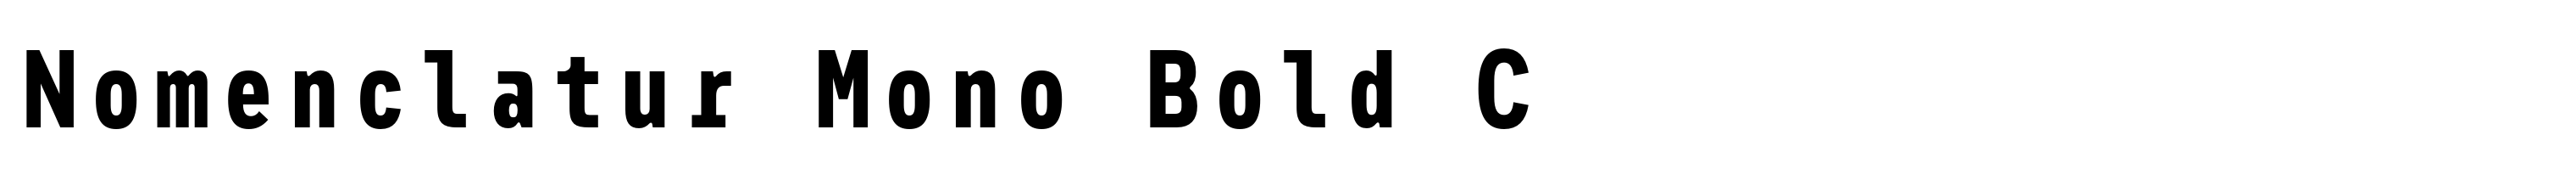 Nomenclatur Mono Bold C